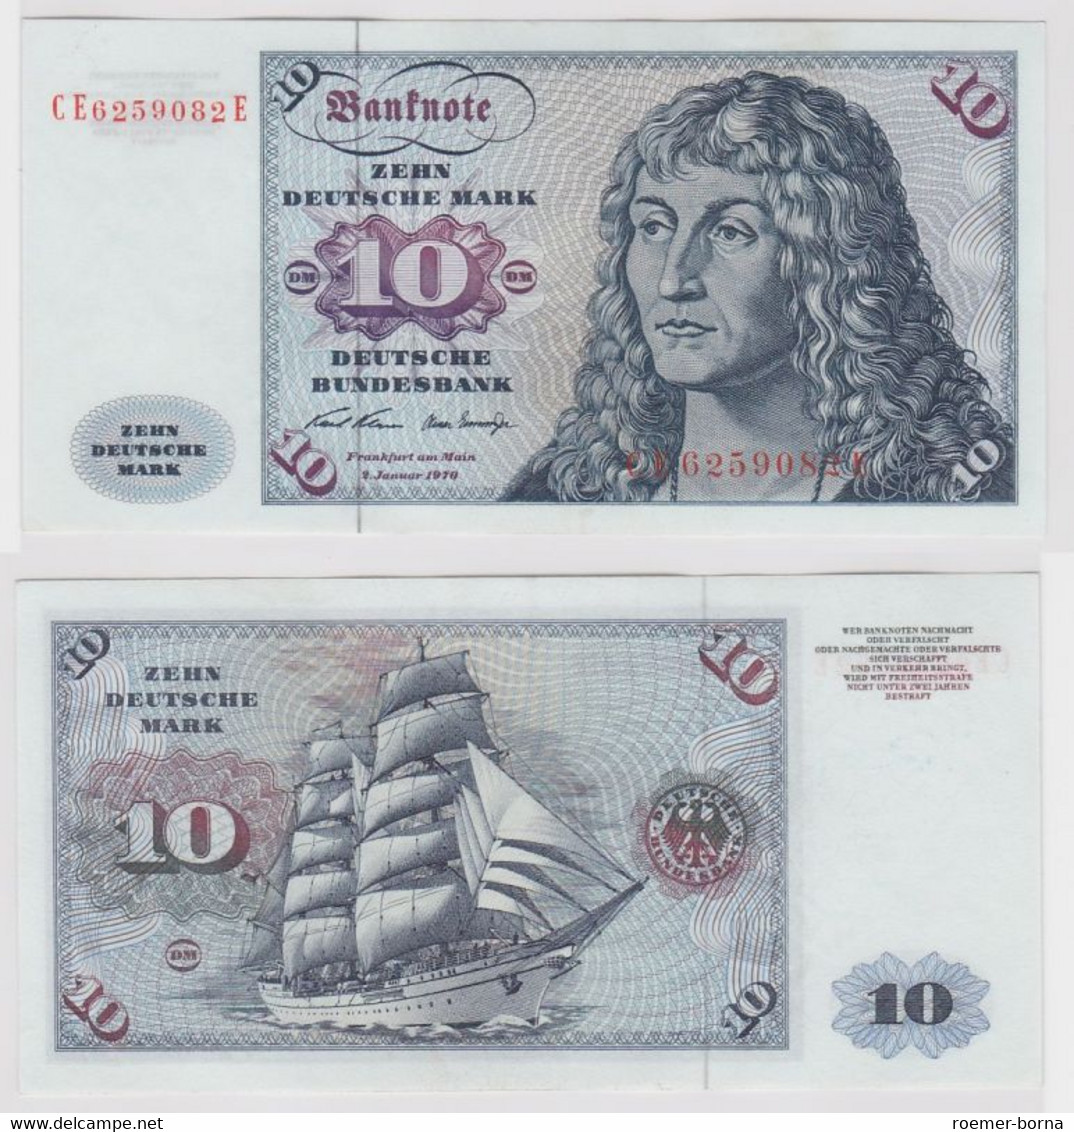 T147378 Banknote 10 DM Deutsche Mark Ro. 270b Schein 2.Jan. 1970 KN CE 6259082 E - 10 DM